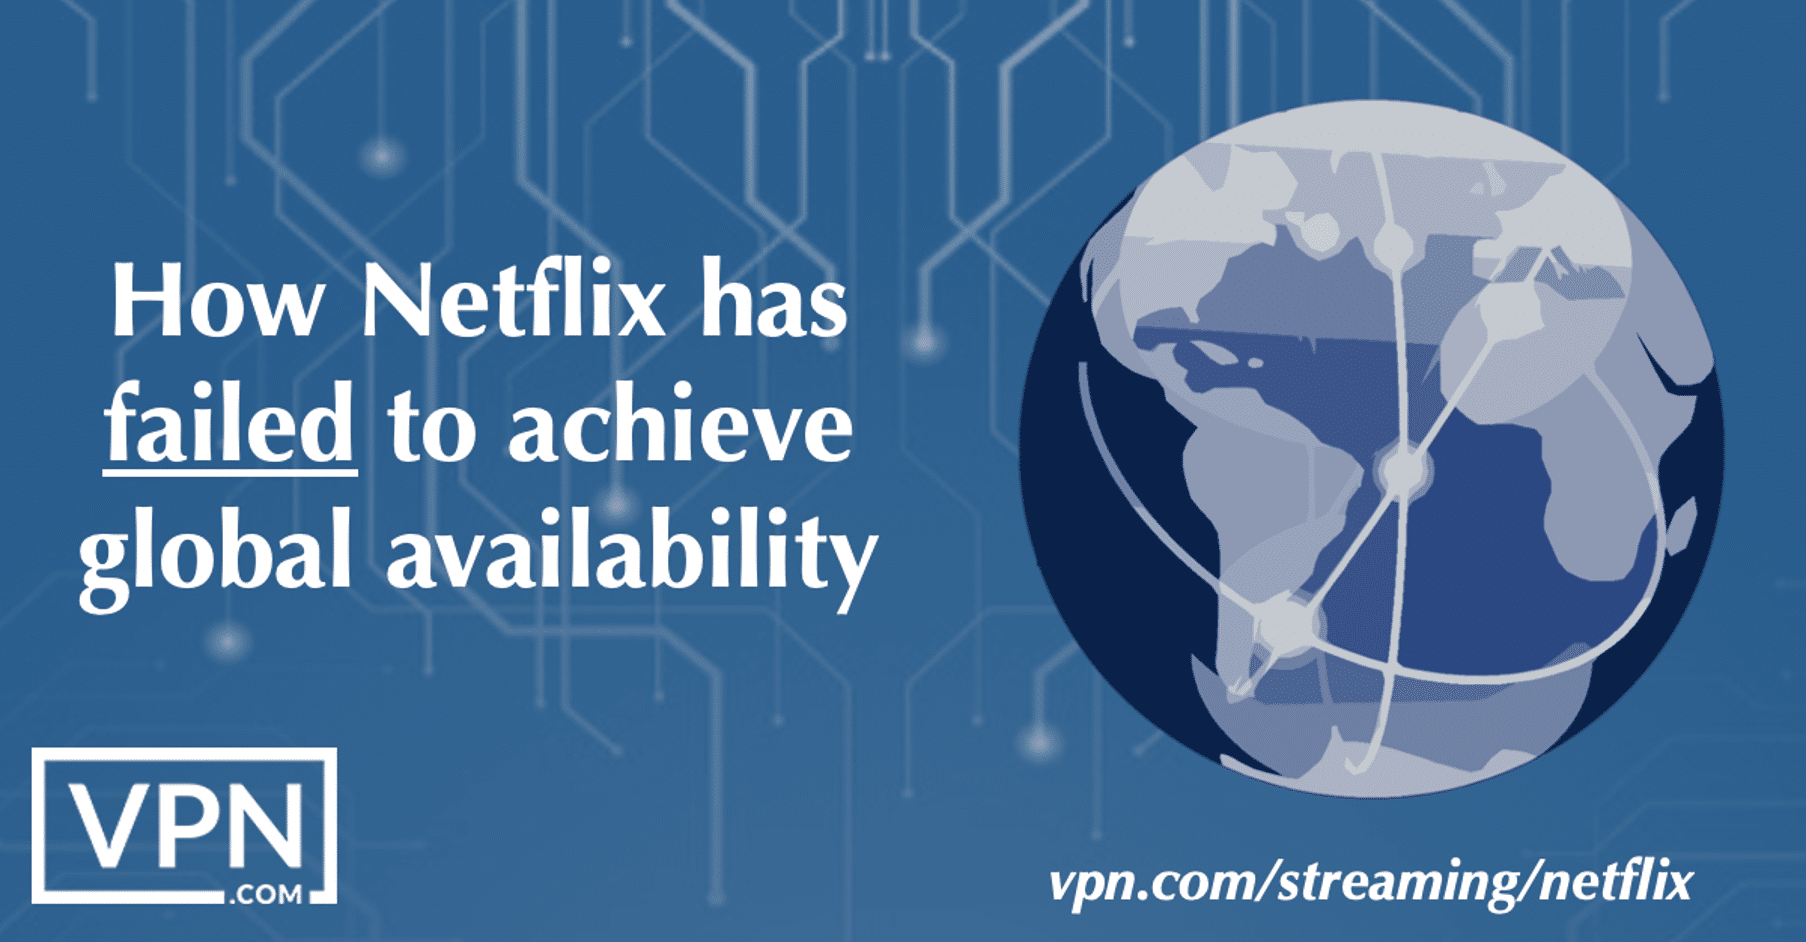 Hogyan nem sikerült elérnie a Netflixnek a globális elérhetőséget?